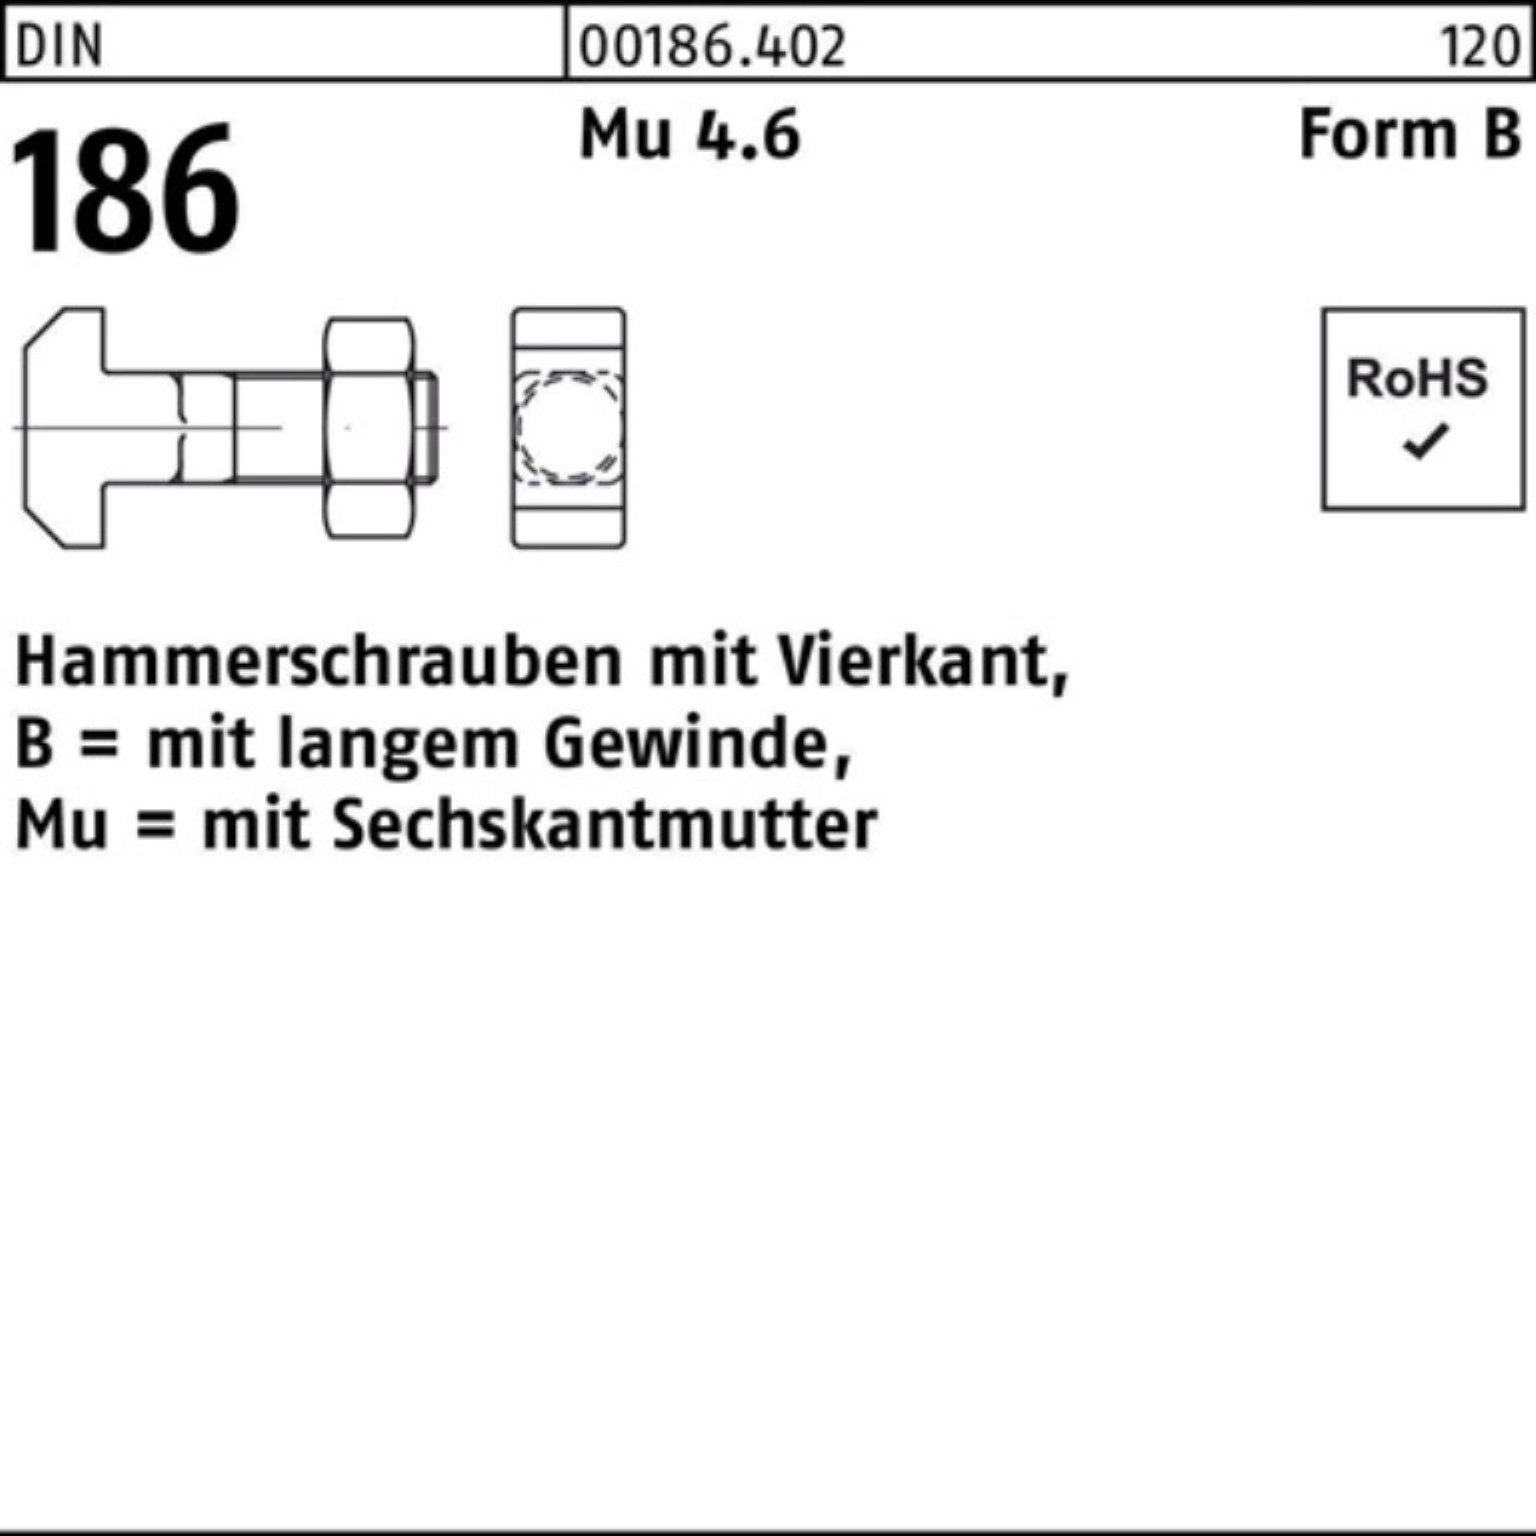 186 Schraube BM DIN FormB Hammerschraube Vierkant 160 Pack Reyher 100er 6-ktmutter 20x